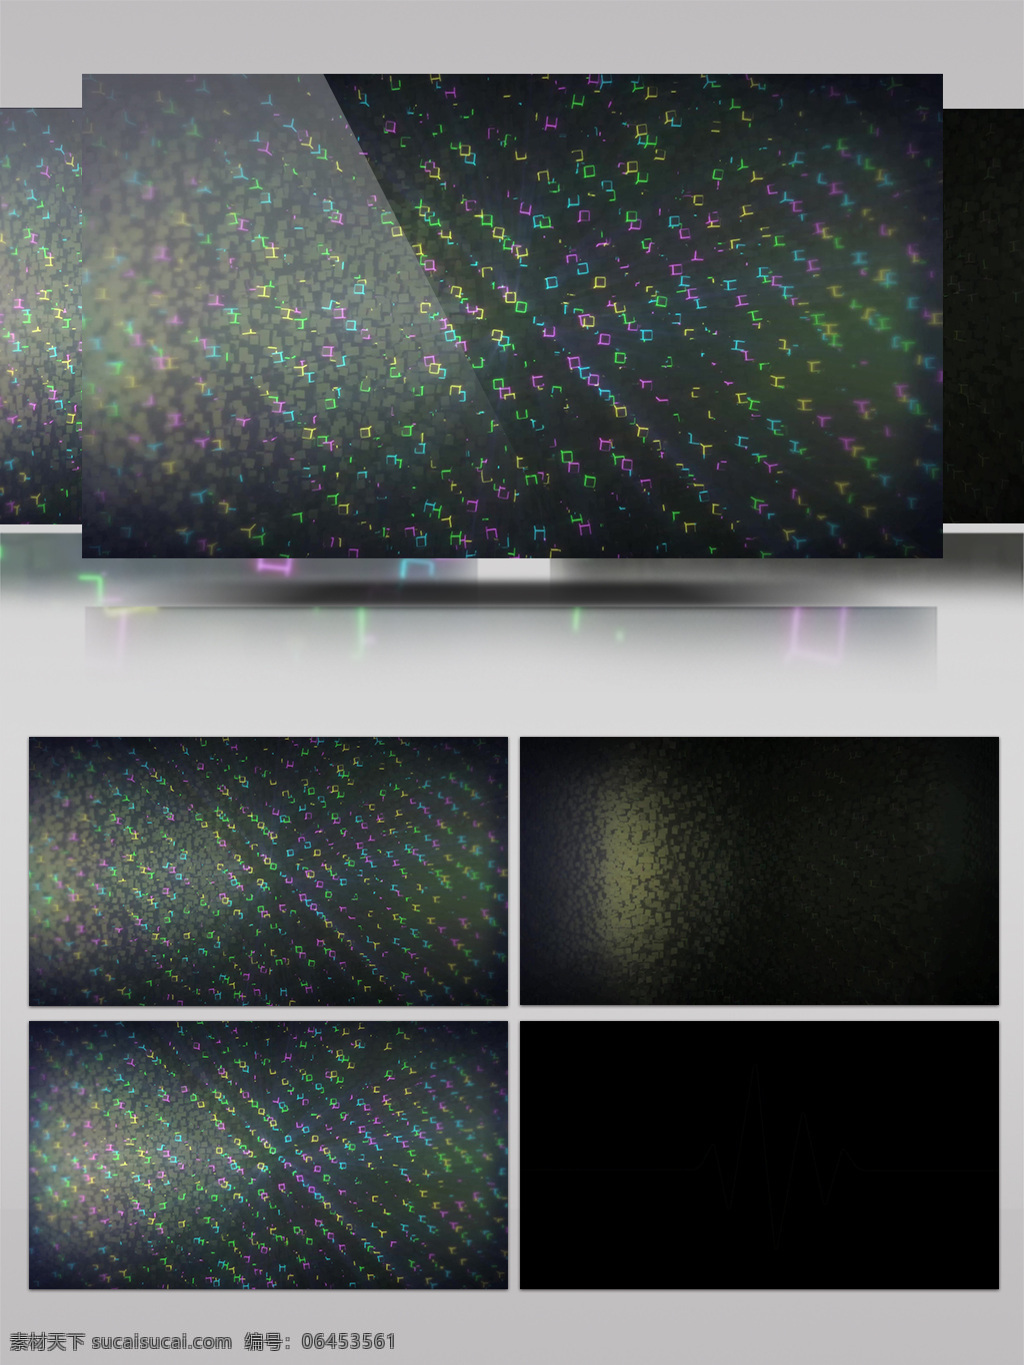 虚空 粒子 视频 光伏粒子 炫酷粒子 光斑散射 视觉享受 手机壁纸 电脑屏幕保护 高清视频素材 3d视频素材 特效视频素材